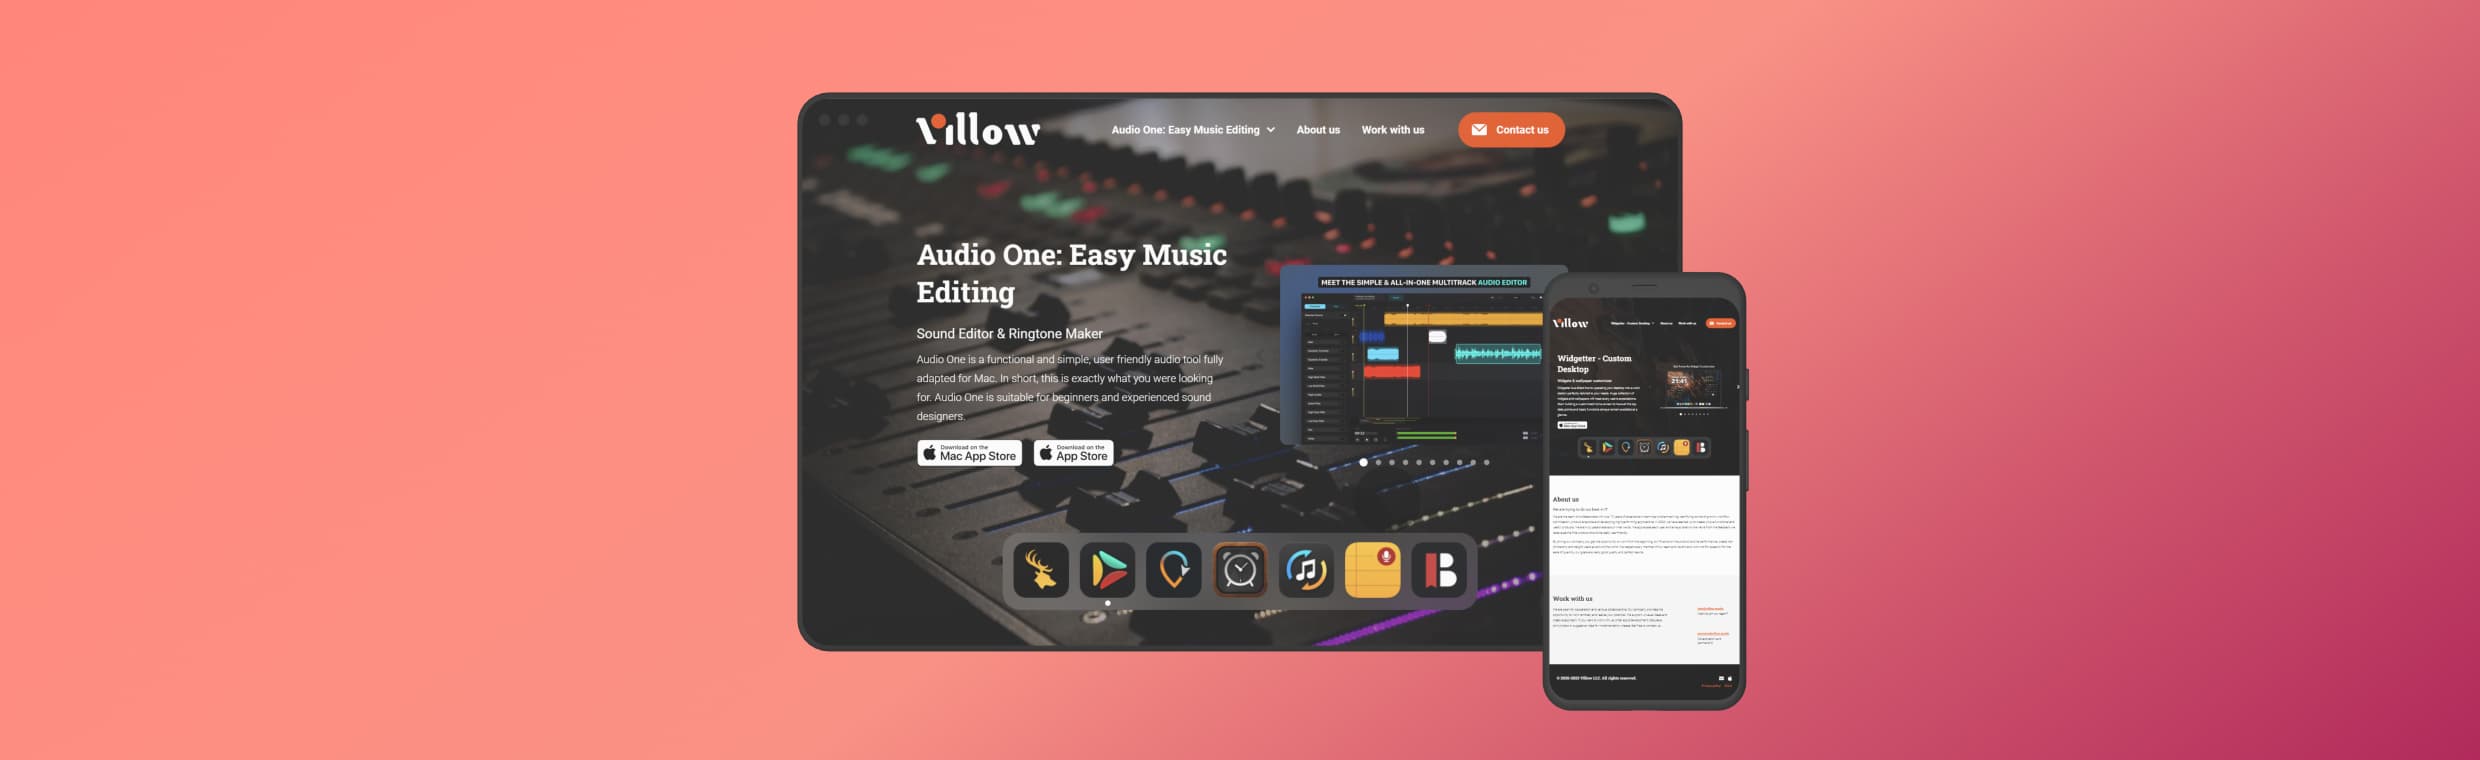 Экран приложения Audio One от Villow